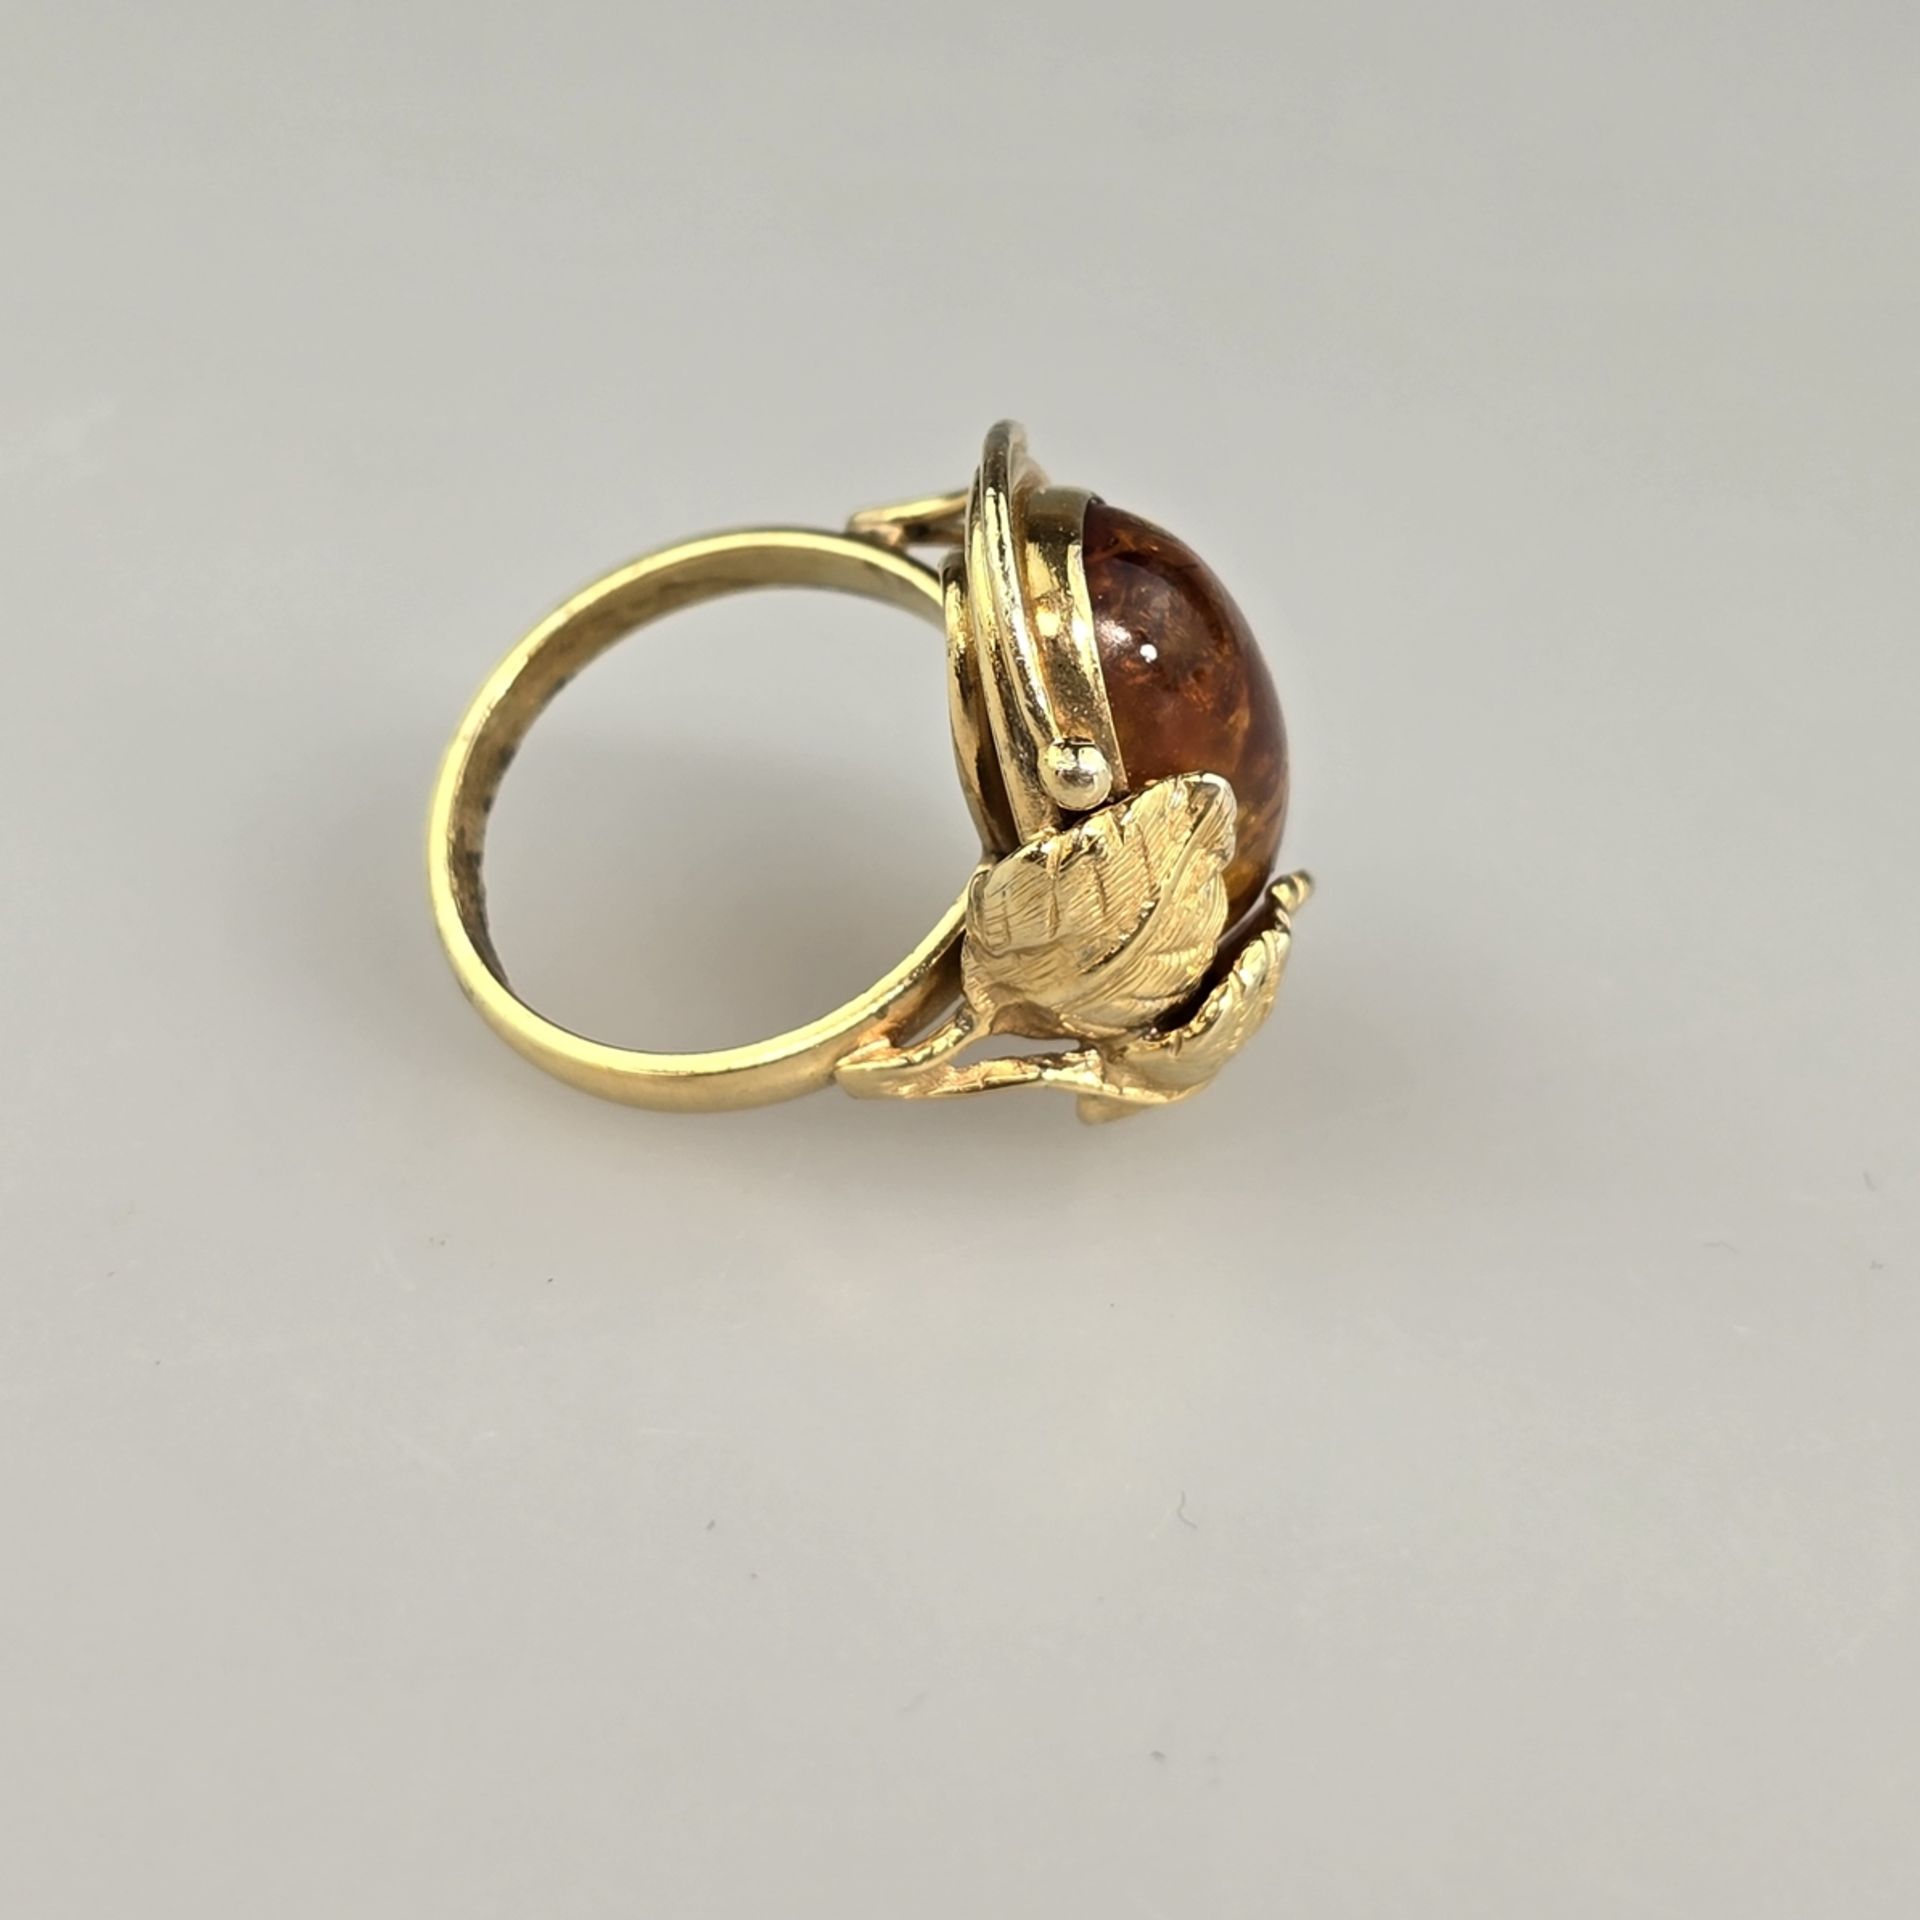 Bernsteinring - Silber 925/000, vergoldet, außen gestempelt, Bernstein von ca.18 x 12 mm, Ringgröße - Image 5 of 8